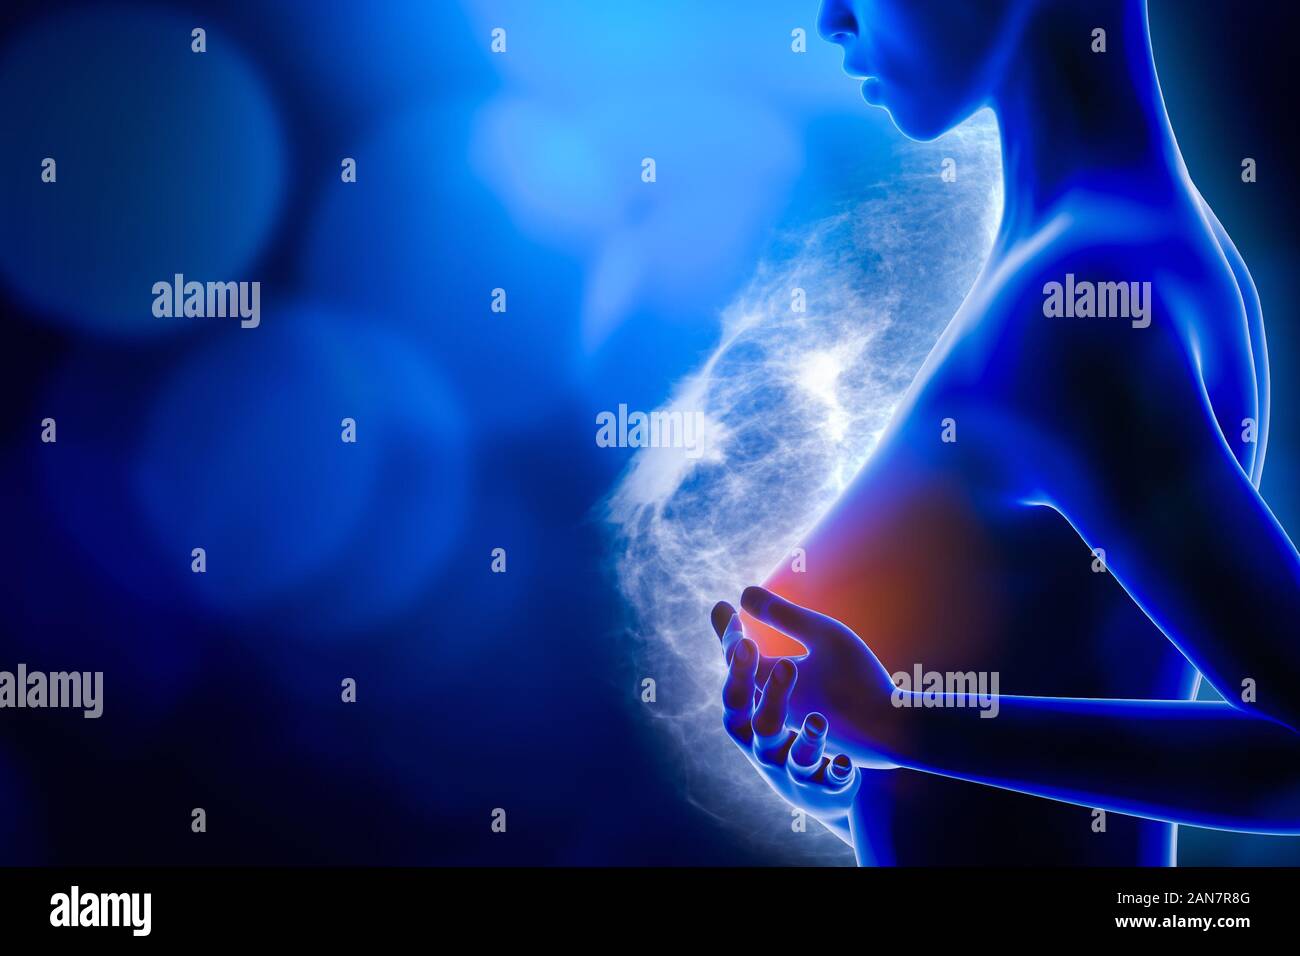 Donna che mantiene il suo petto con entrambe le mani con un seno a raggi x che mostra immagini di un carcinoma tumore in background. Il cancro al seno 3D rendering illustrat Foto Stock